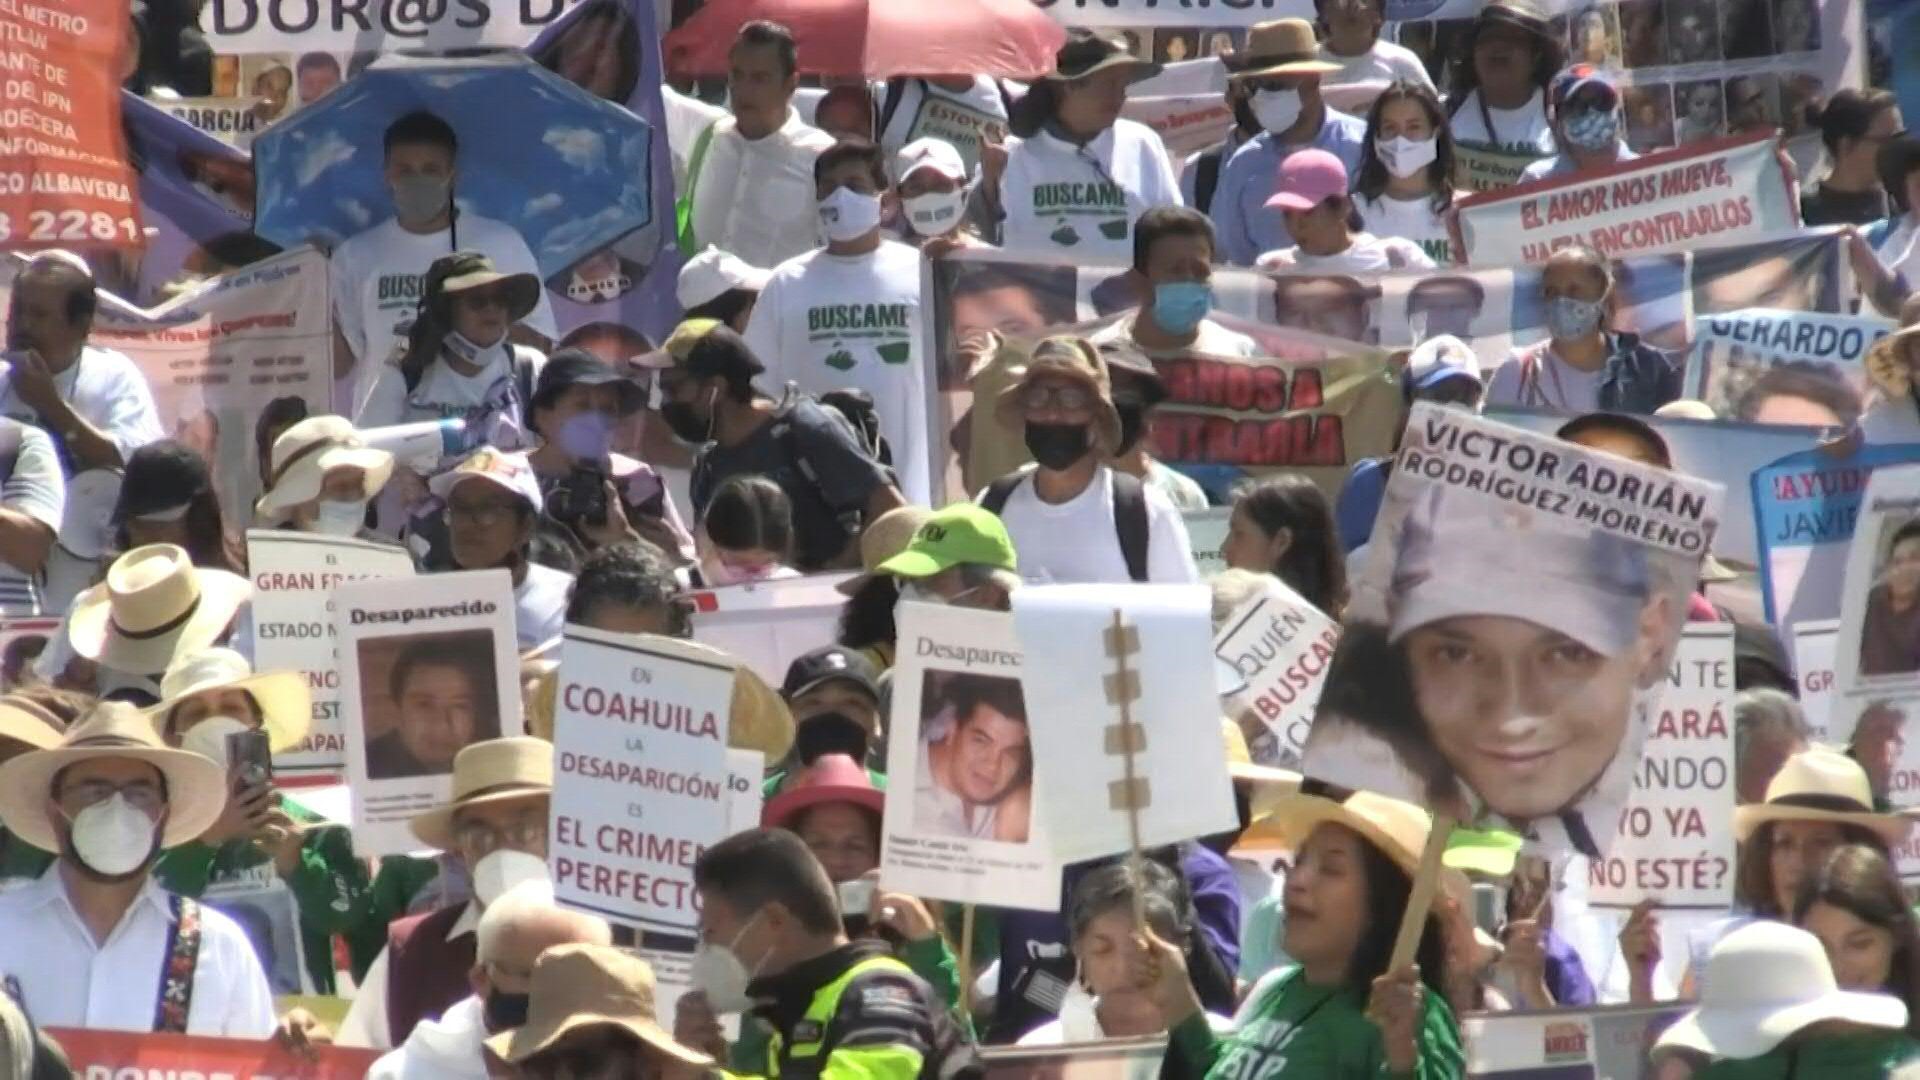 El registro de personas desaparecidas en México alcanzó los 100 mil casos (Foto: Archivo)